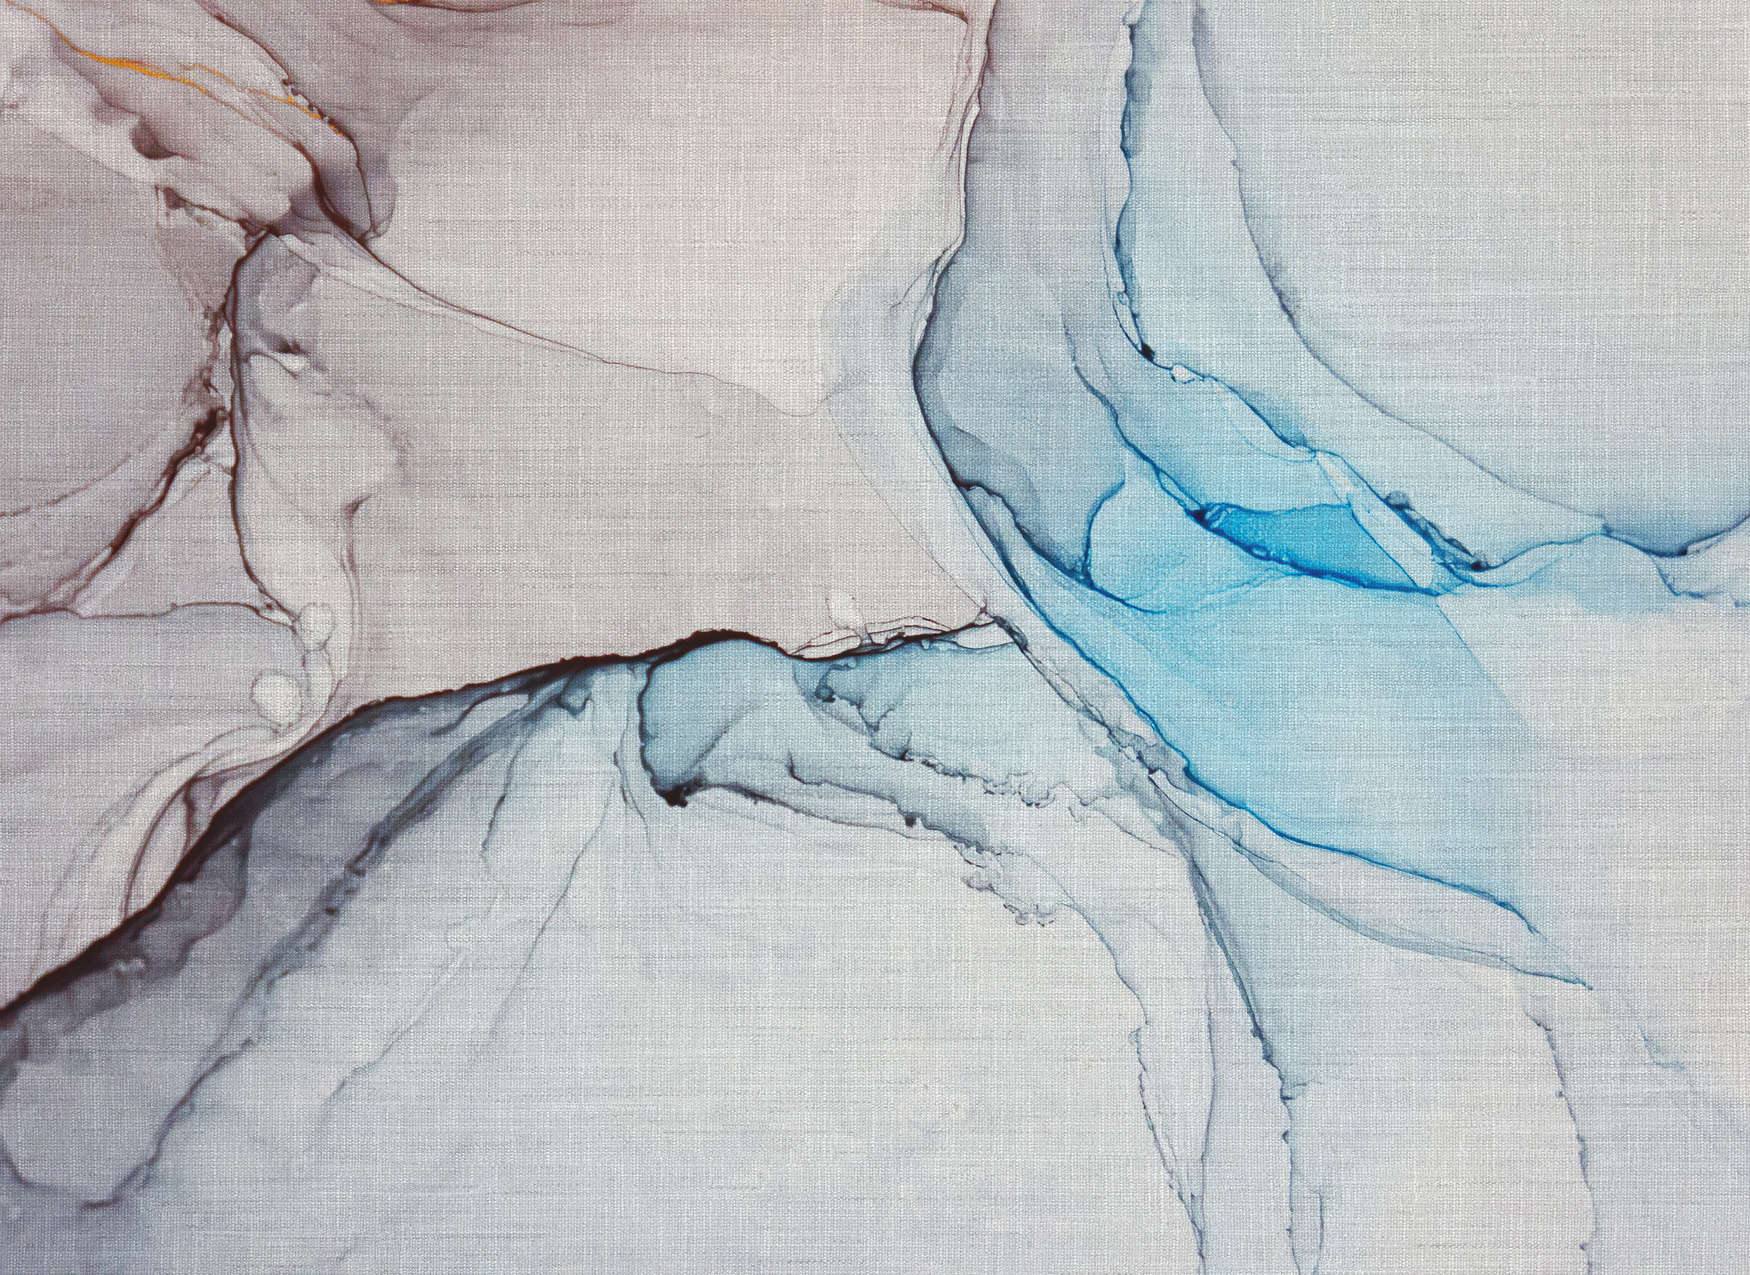             Fototapete mit Marmor-Muster aus Leinenoptik – Blau, Grau
        